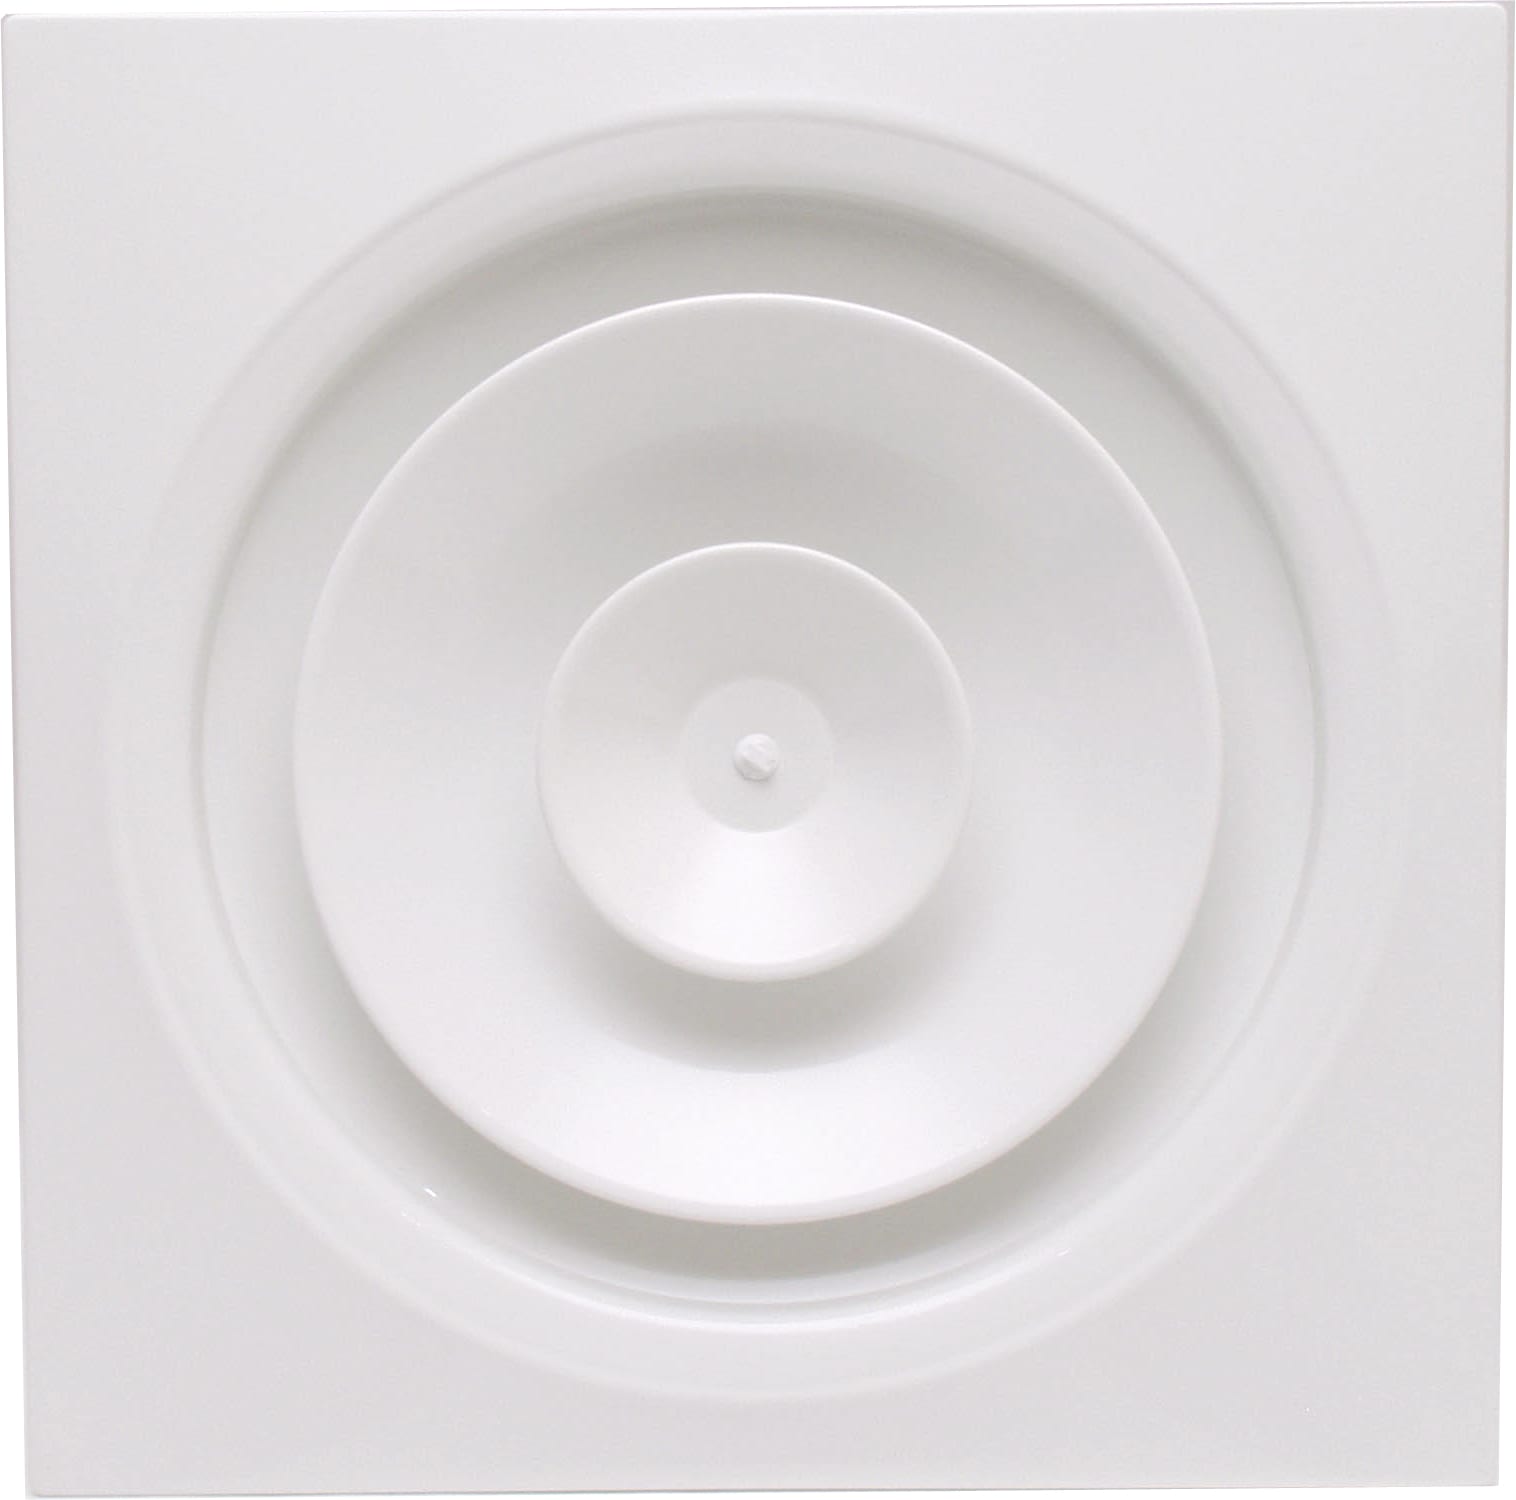 S&P - Diffuseur circulaire a jet reglable pour faux plafond, blanc, D raccord 250 mm